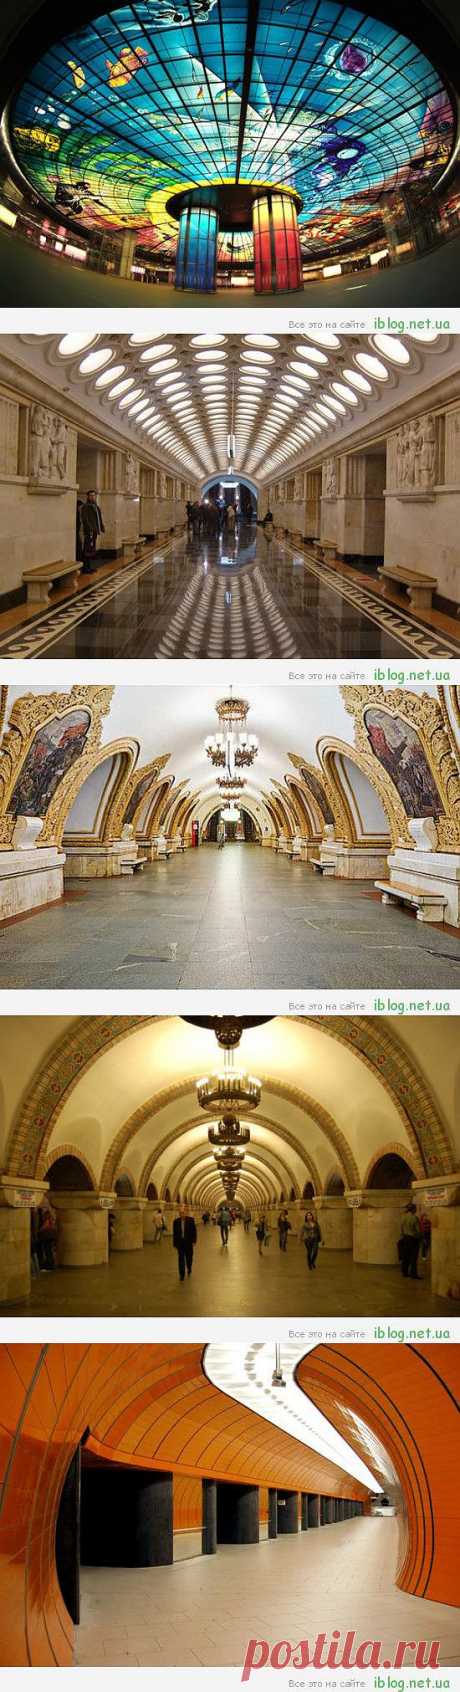 Самые красивые станции метро мира | Удобные штучки